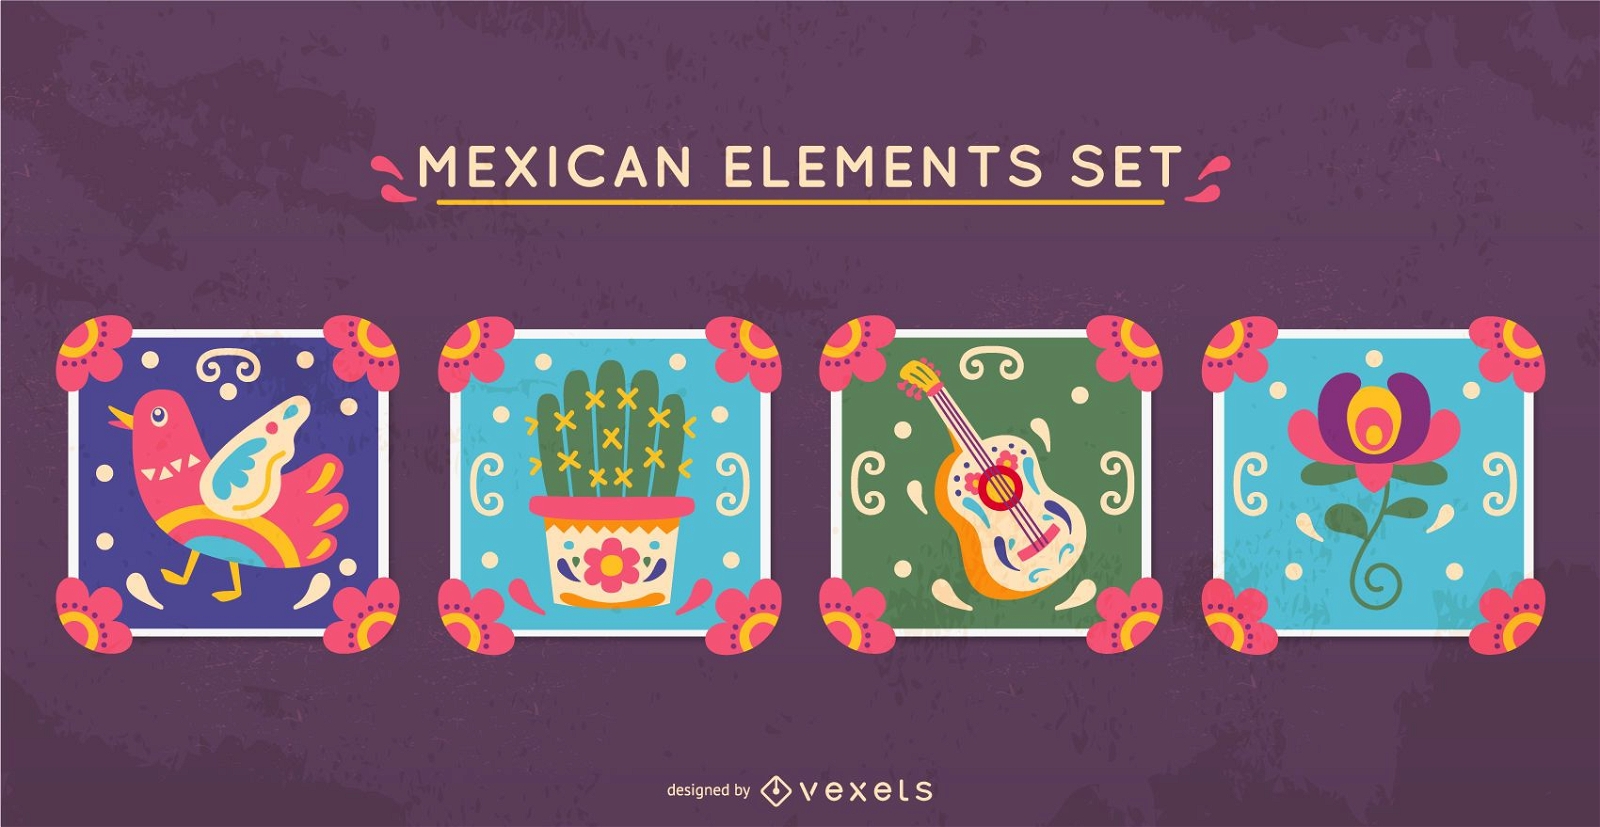 Mexican elements set